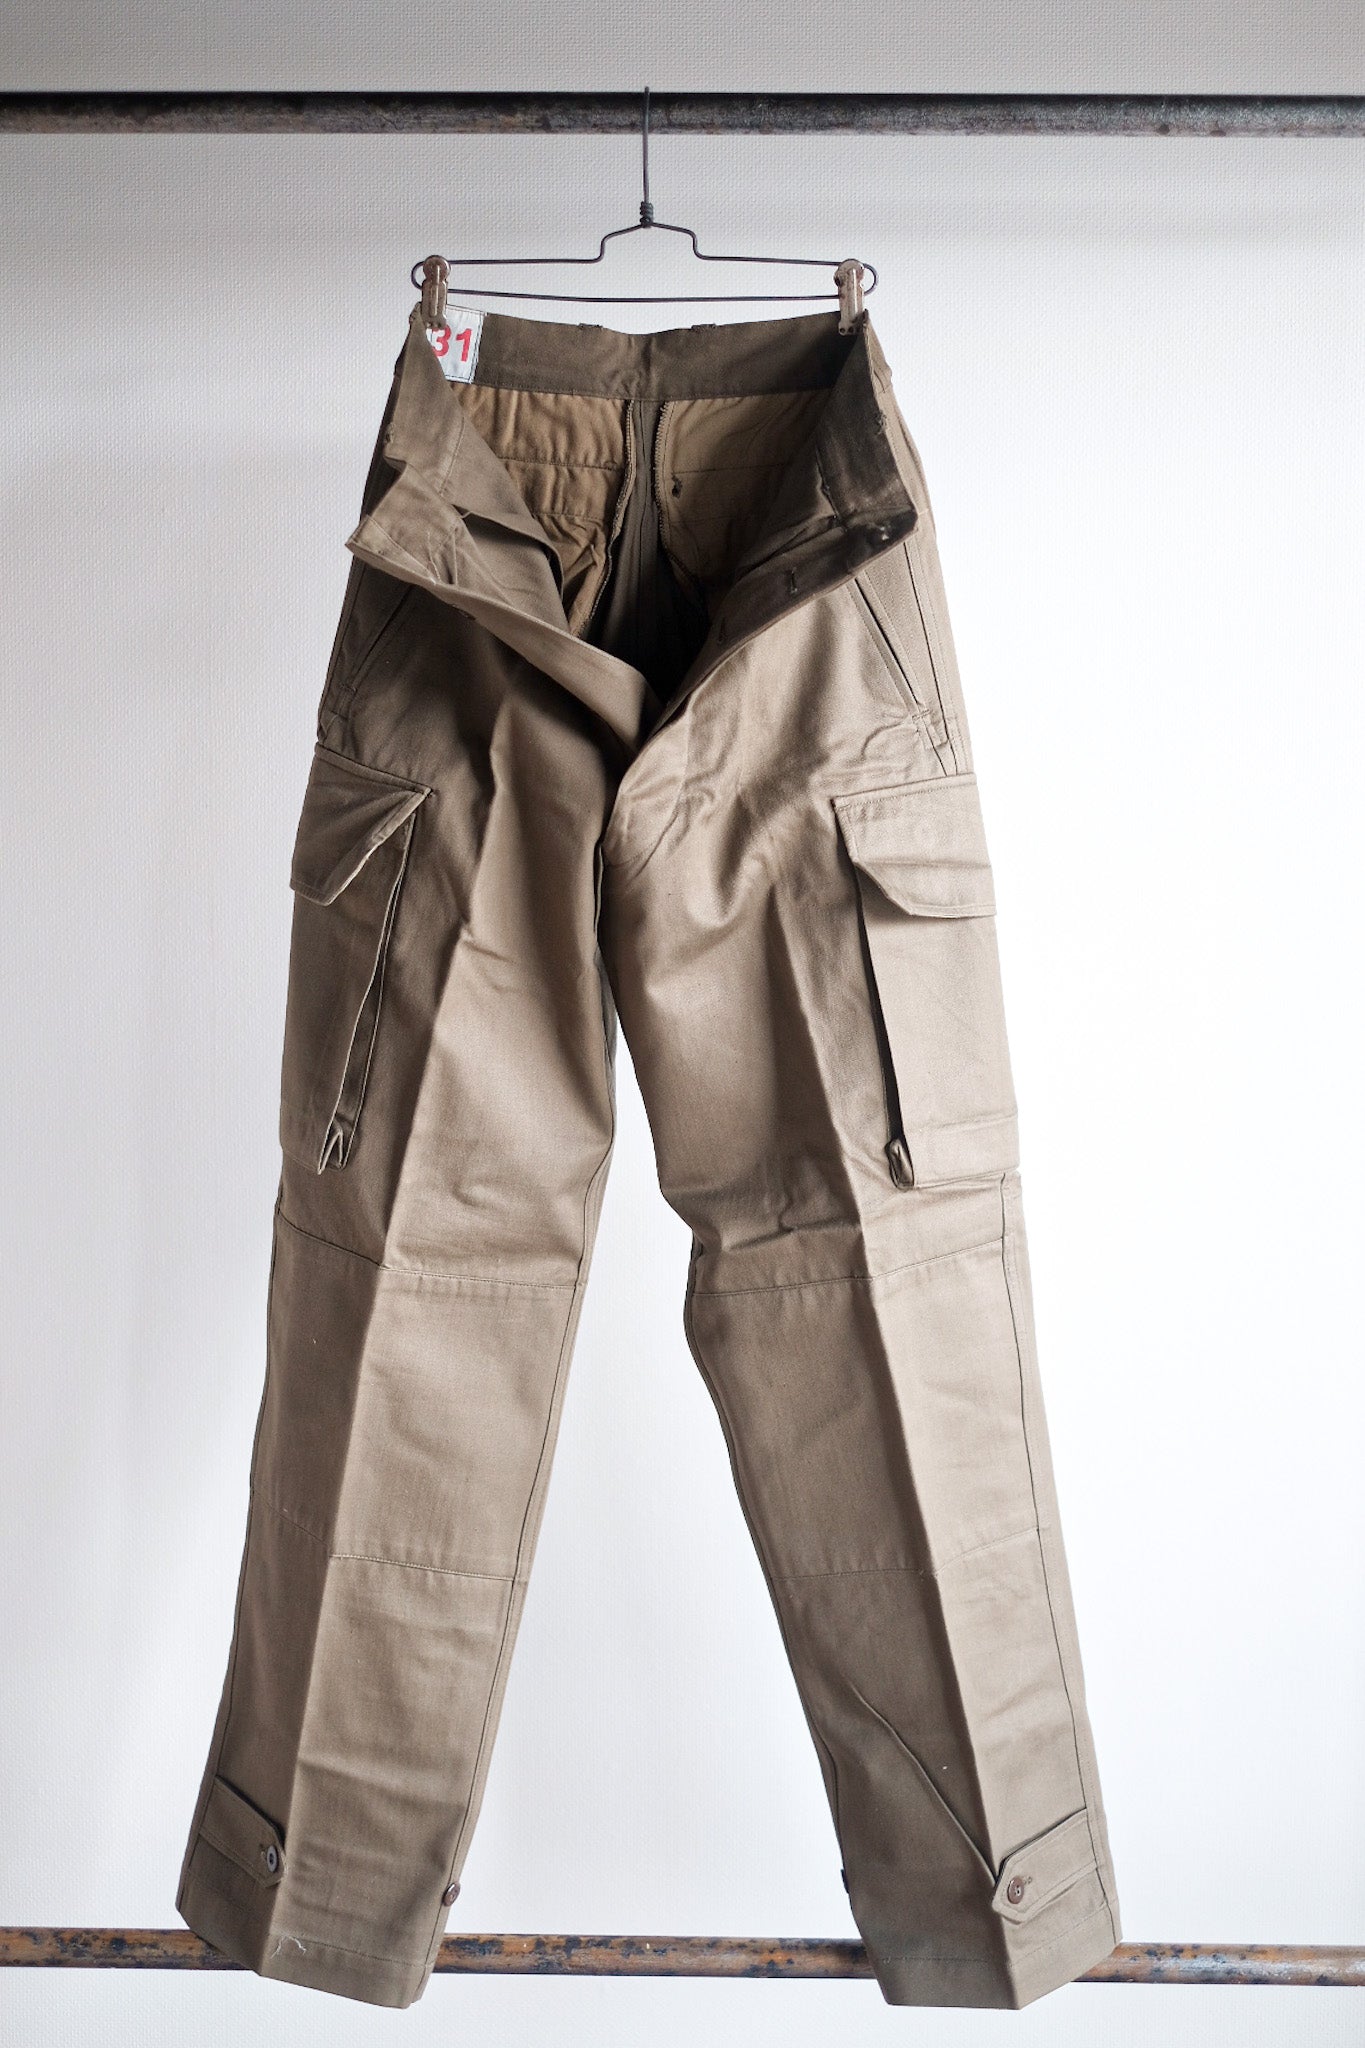 [~ 60's] Taille des pantalons de terrain de l'armée française M47.31 "Stock mort"